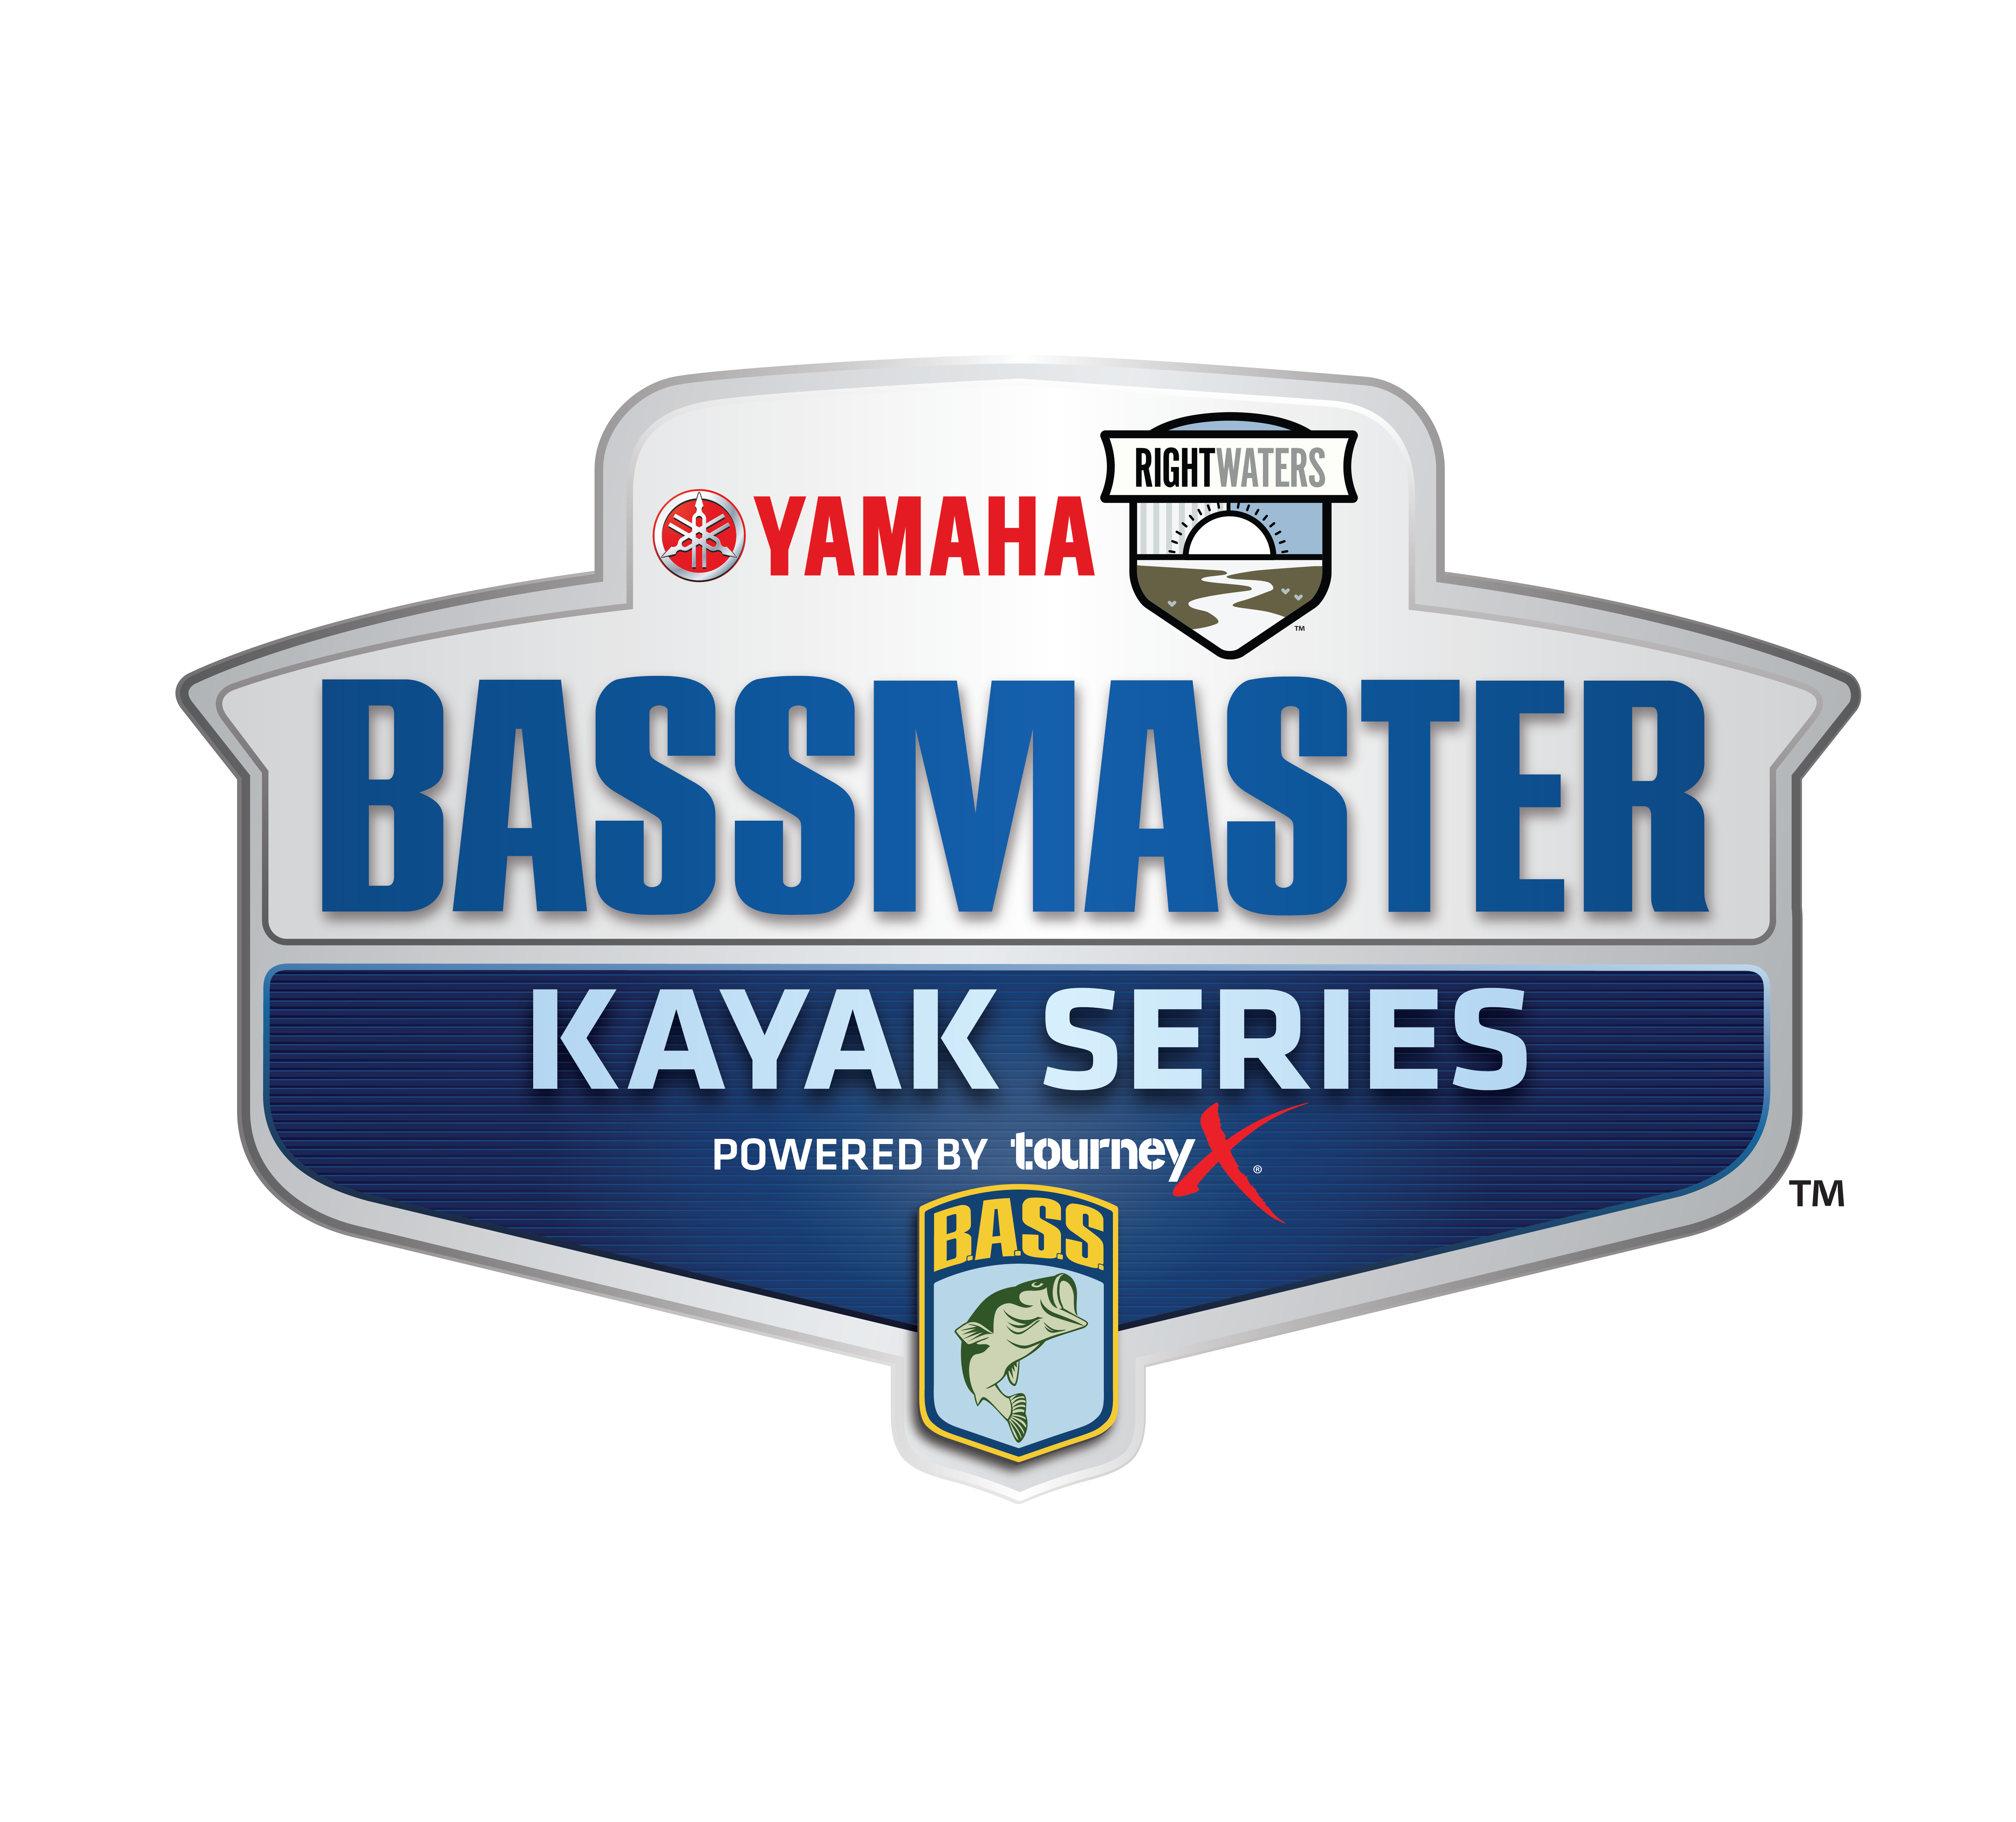 Kayak logo